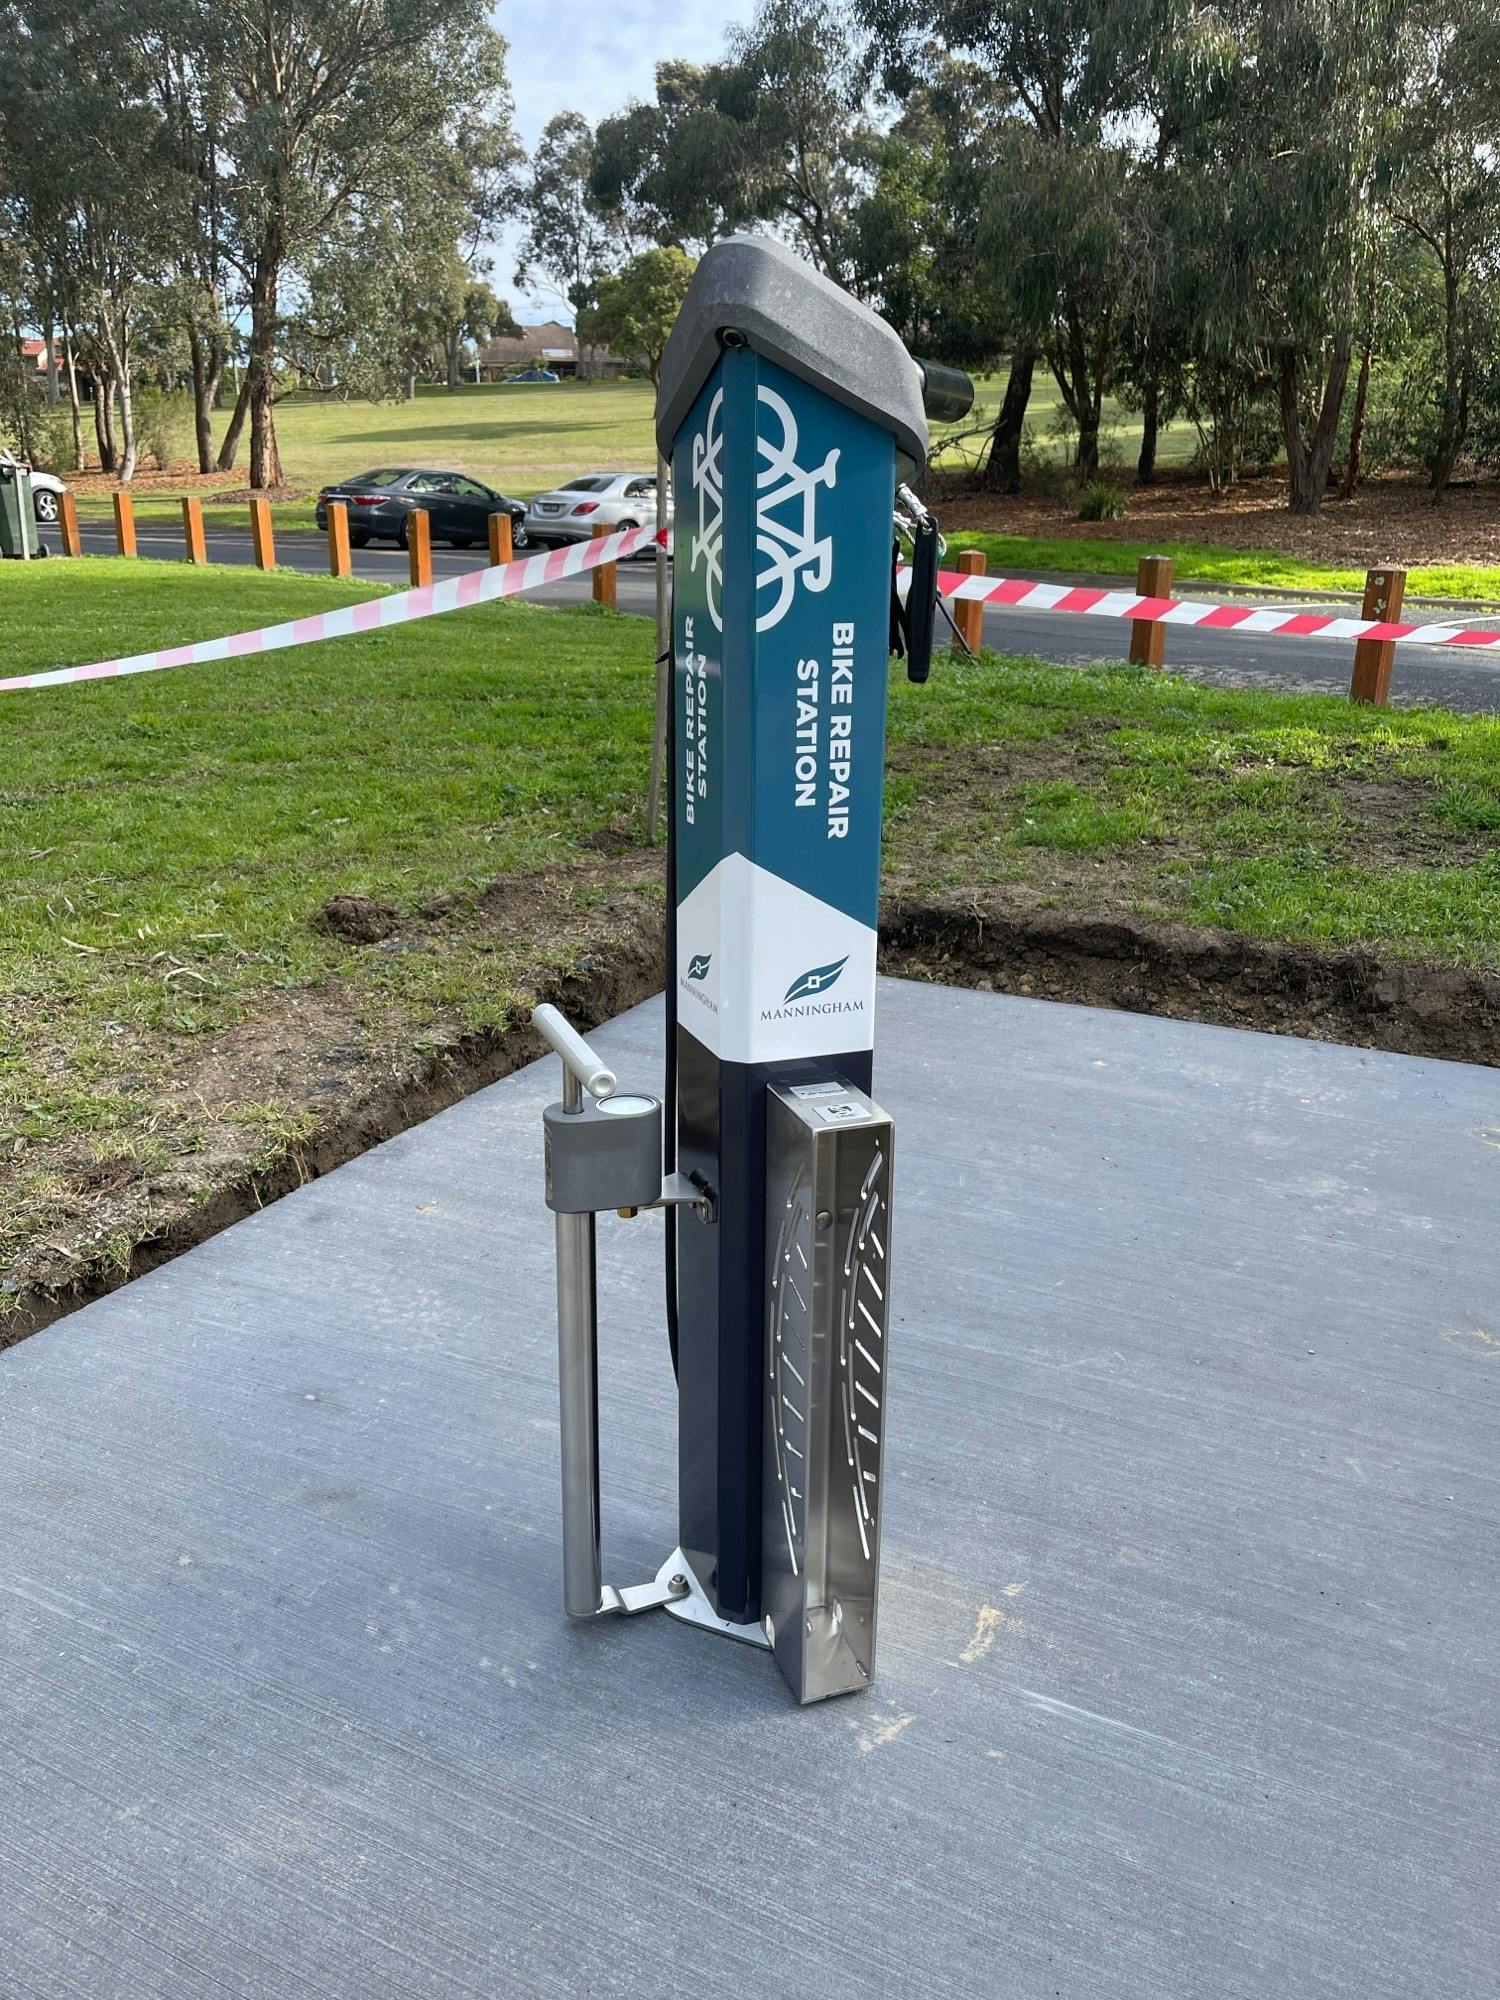 Bike repair station installed in July 2021